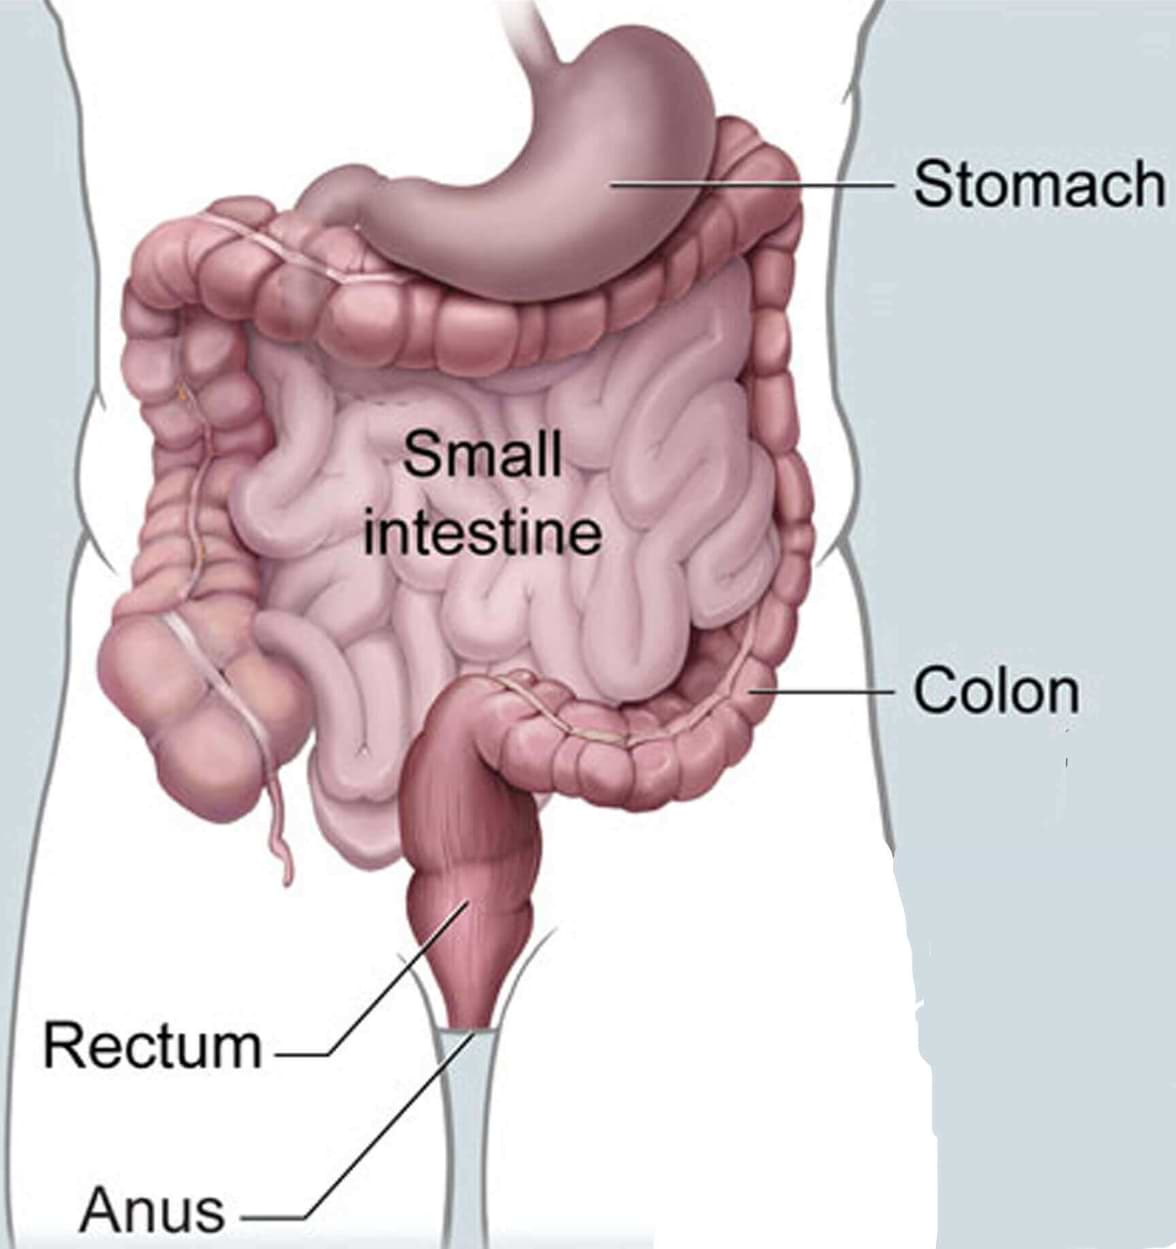 Colon-rectum cancer